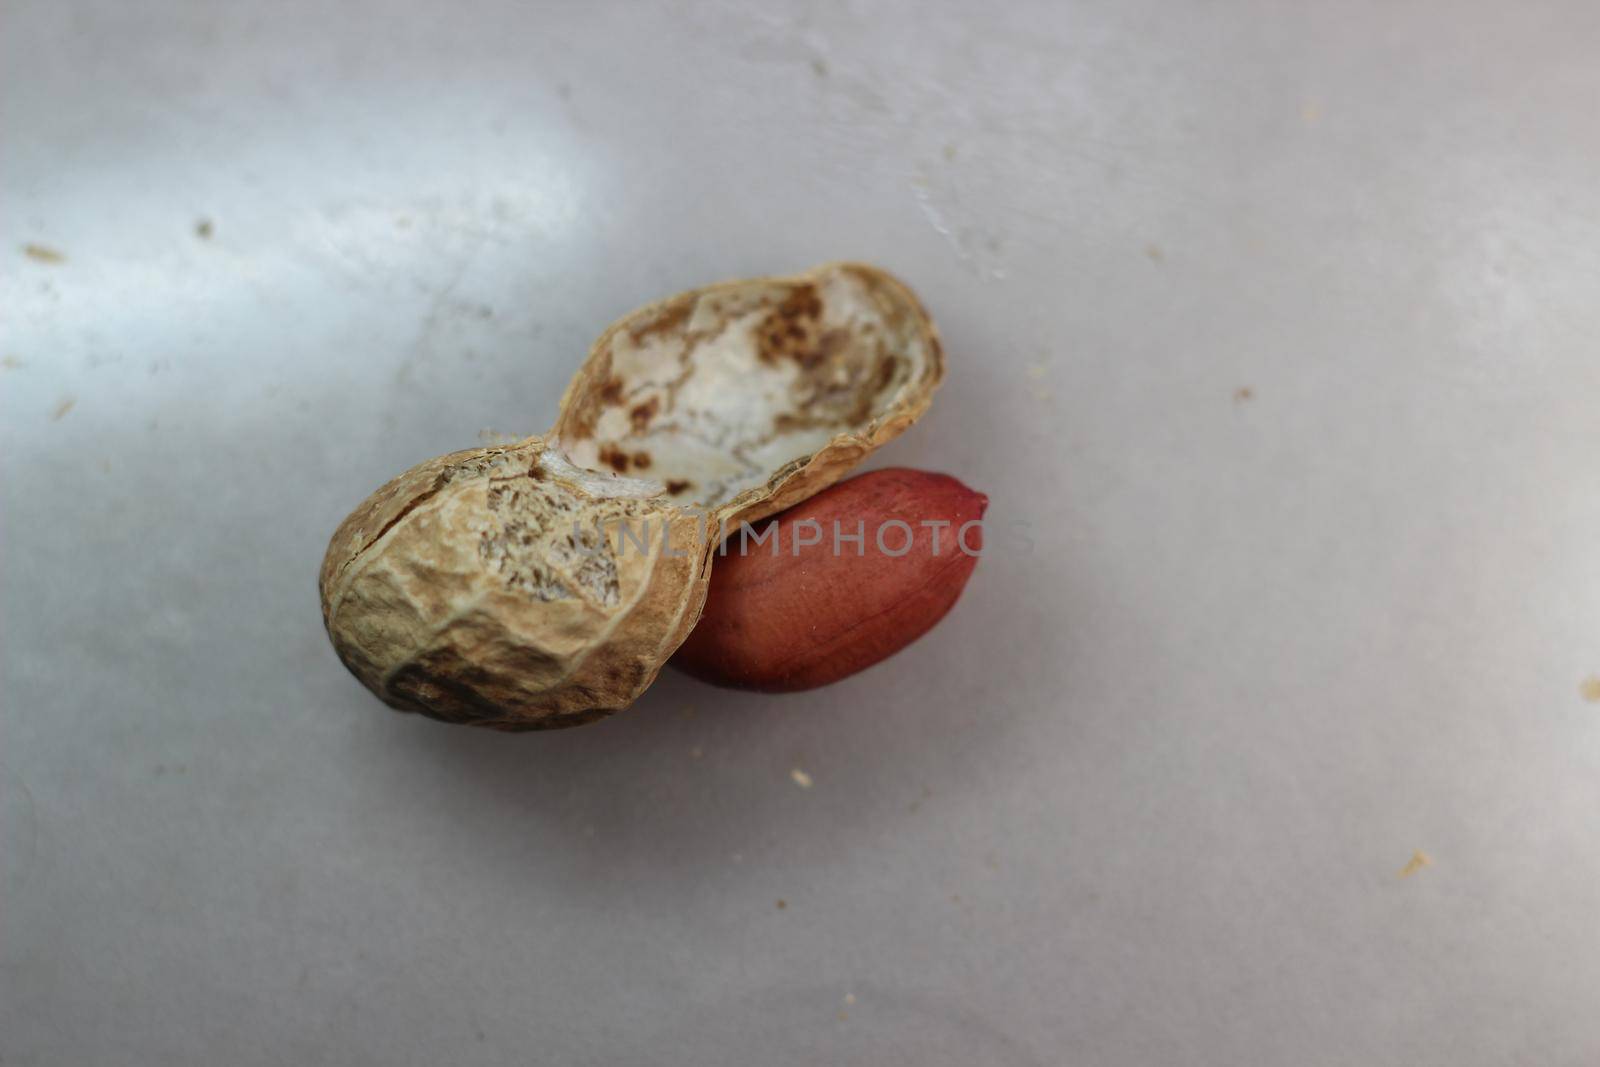 Unpeeled peanut with shells. Food background of peanuts